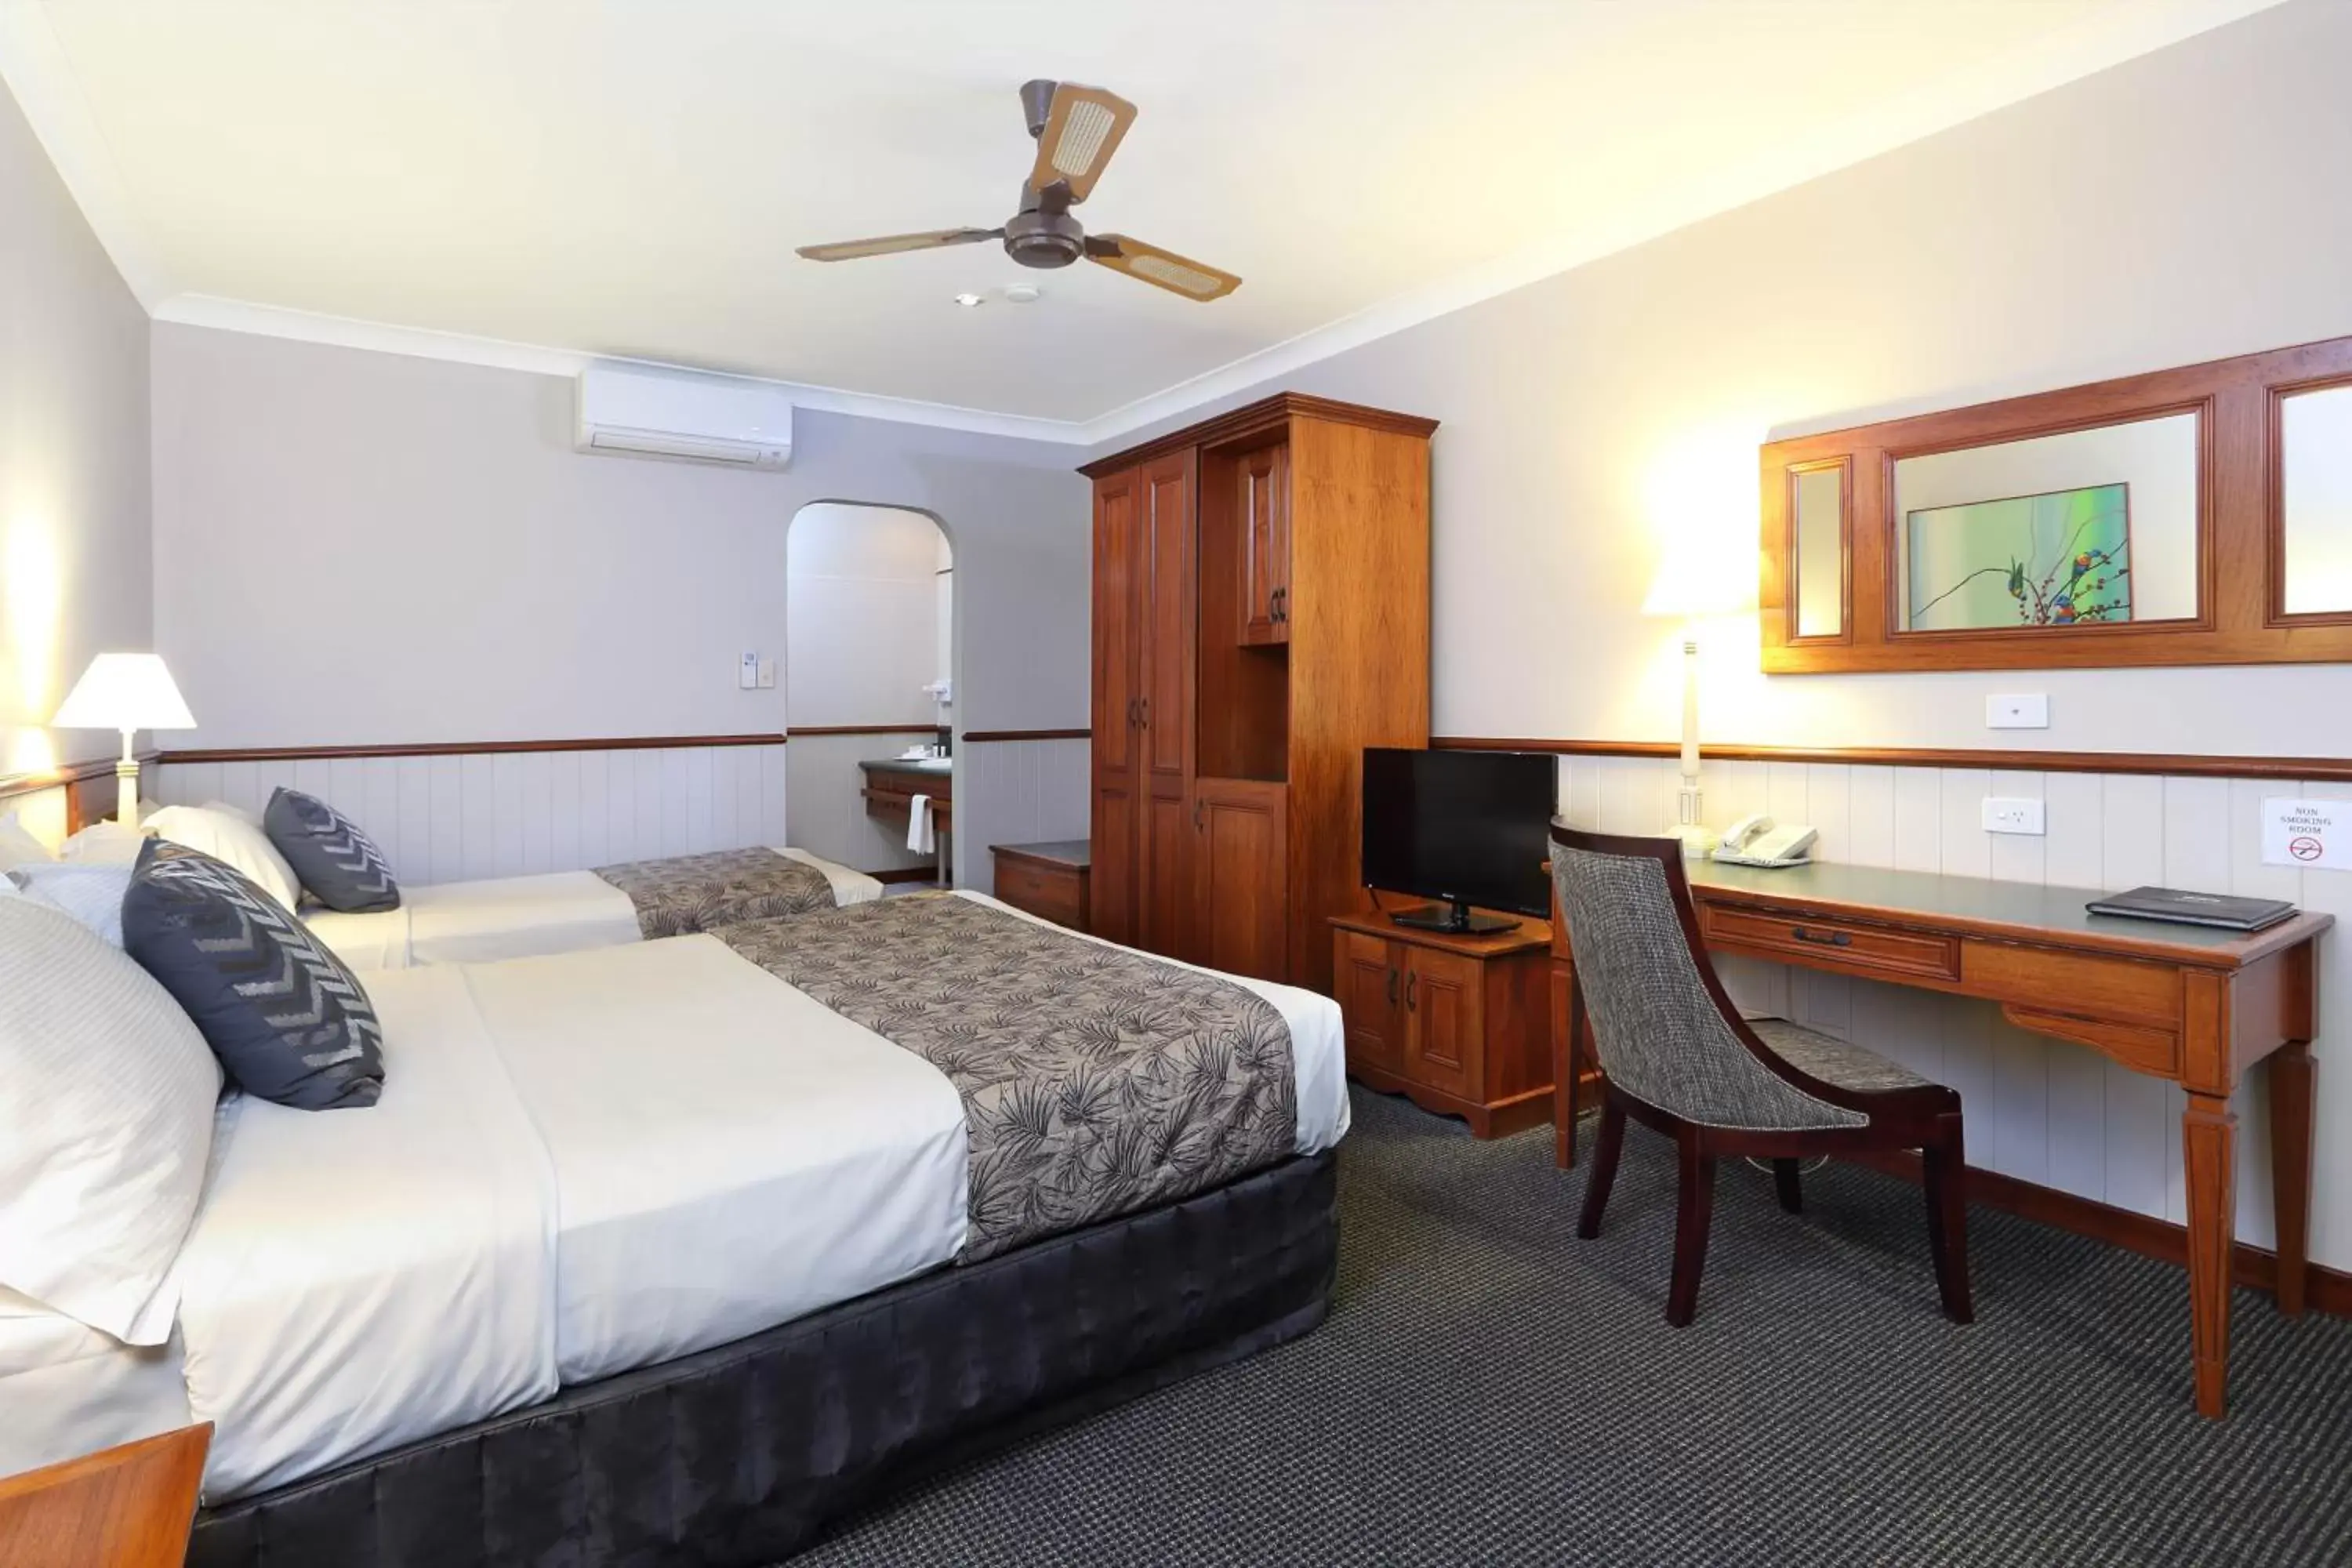 Bedroom, Room Photo in Brisbane International Virginia